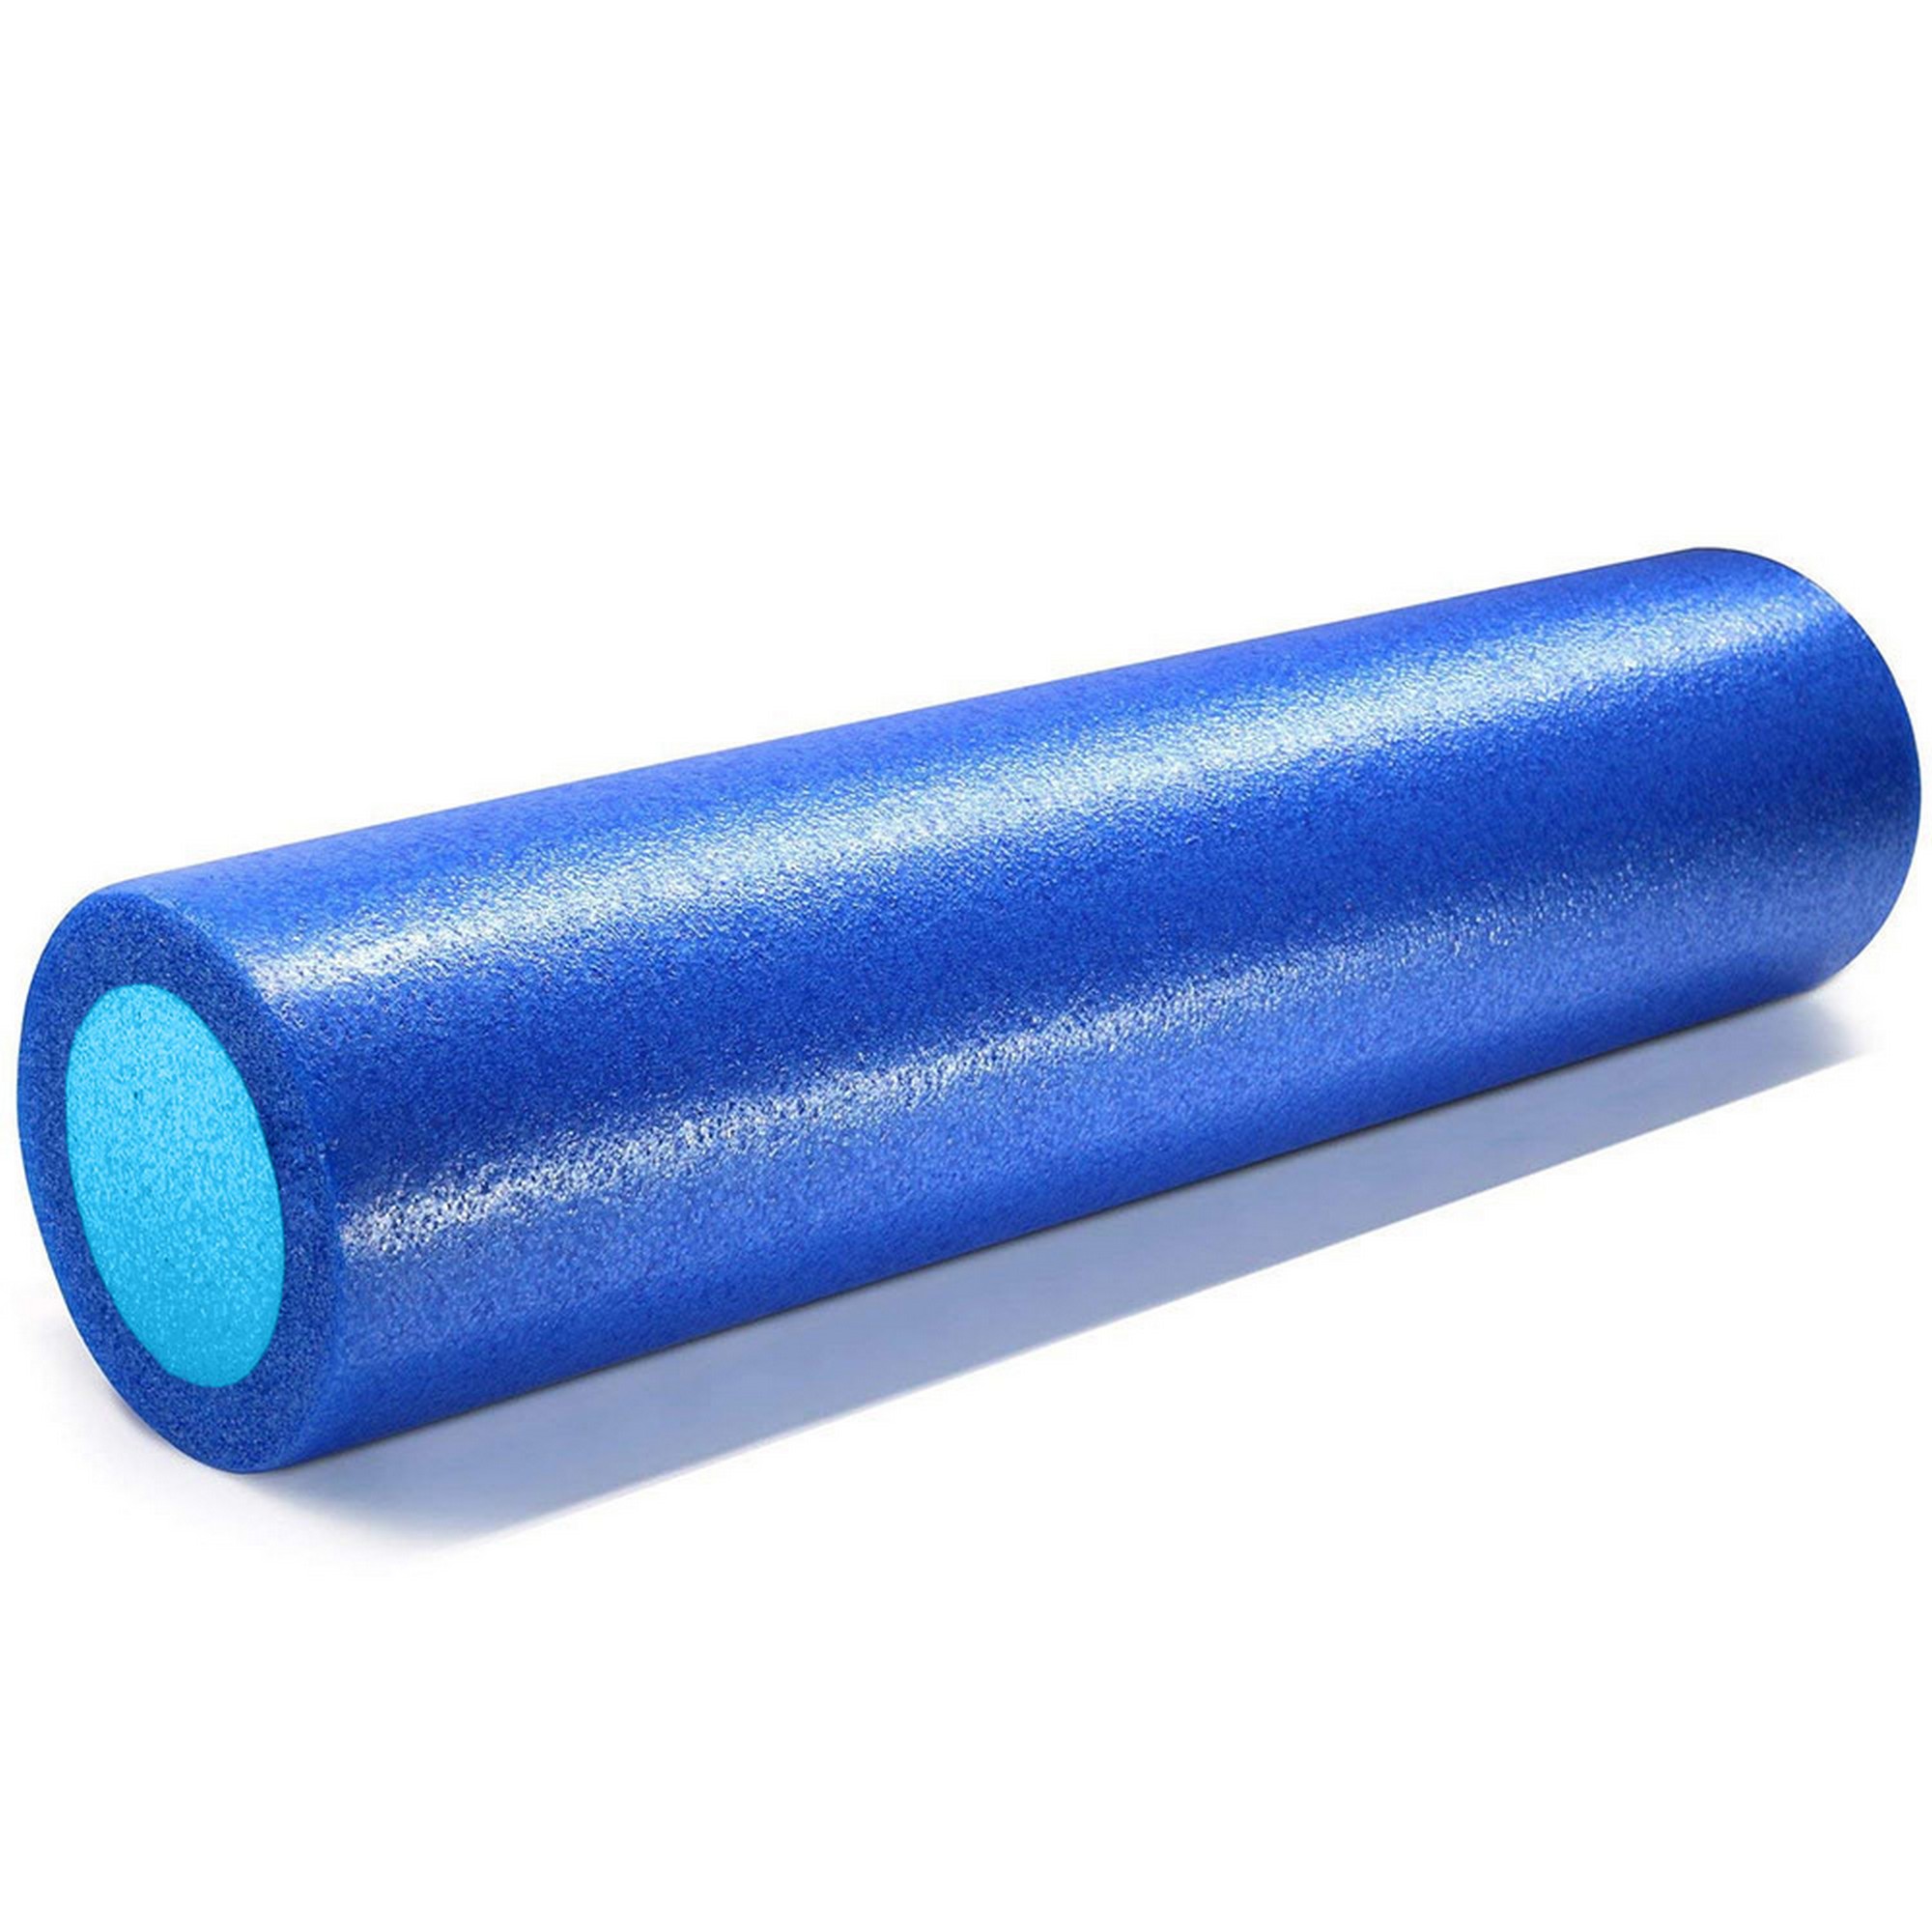 Ролик для йоги полнотелый 2-х цветный, 90х15x15см Sportex PEF90-A синий\голубой 2000_2000